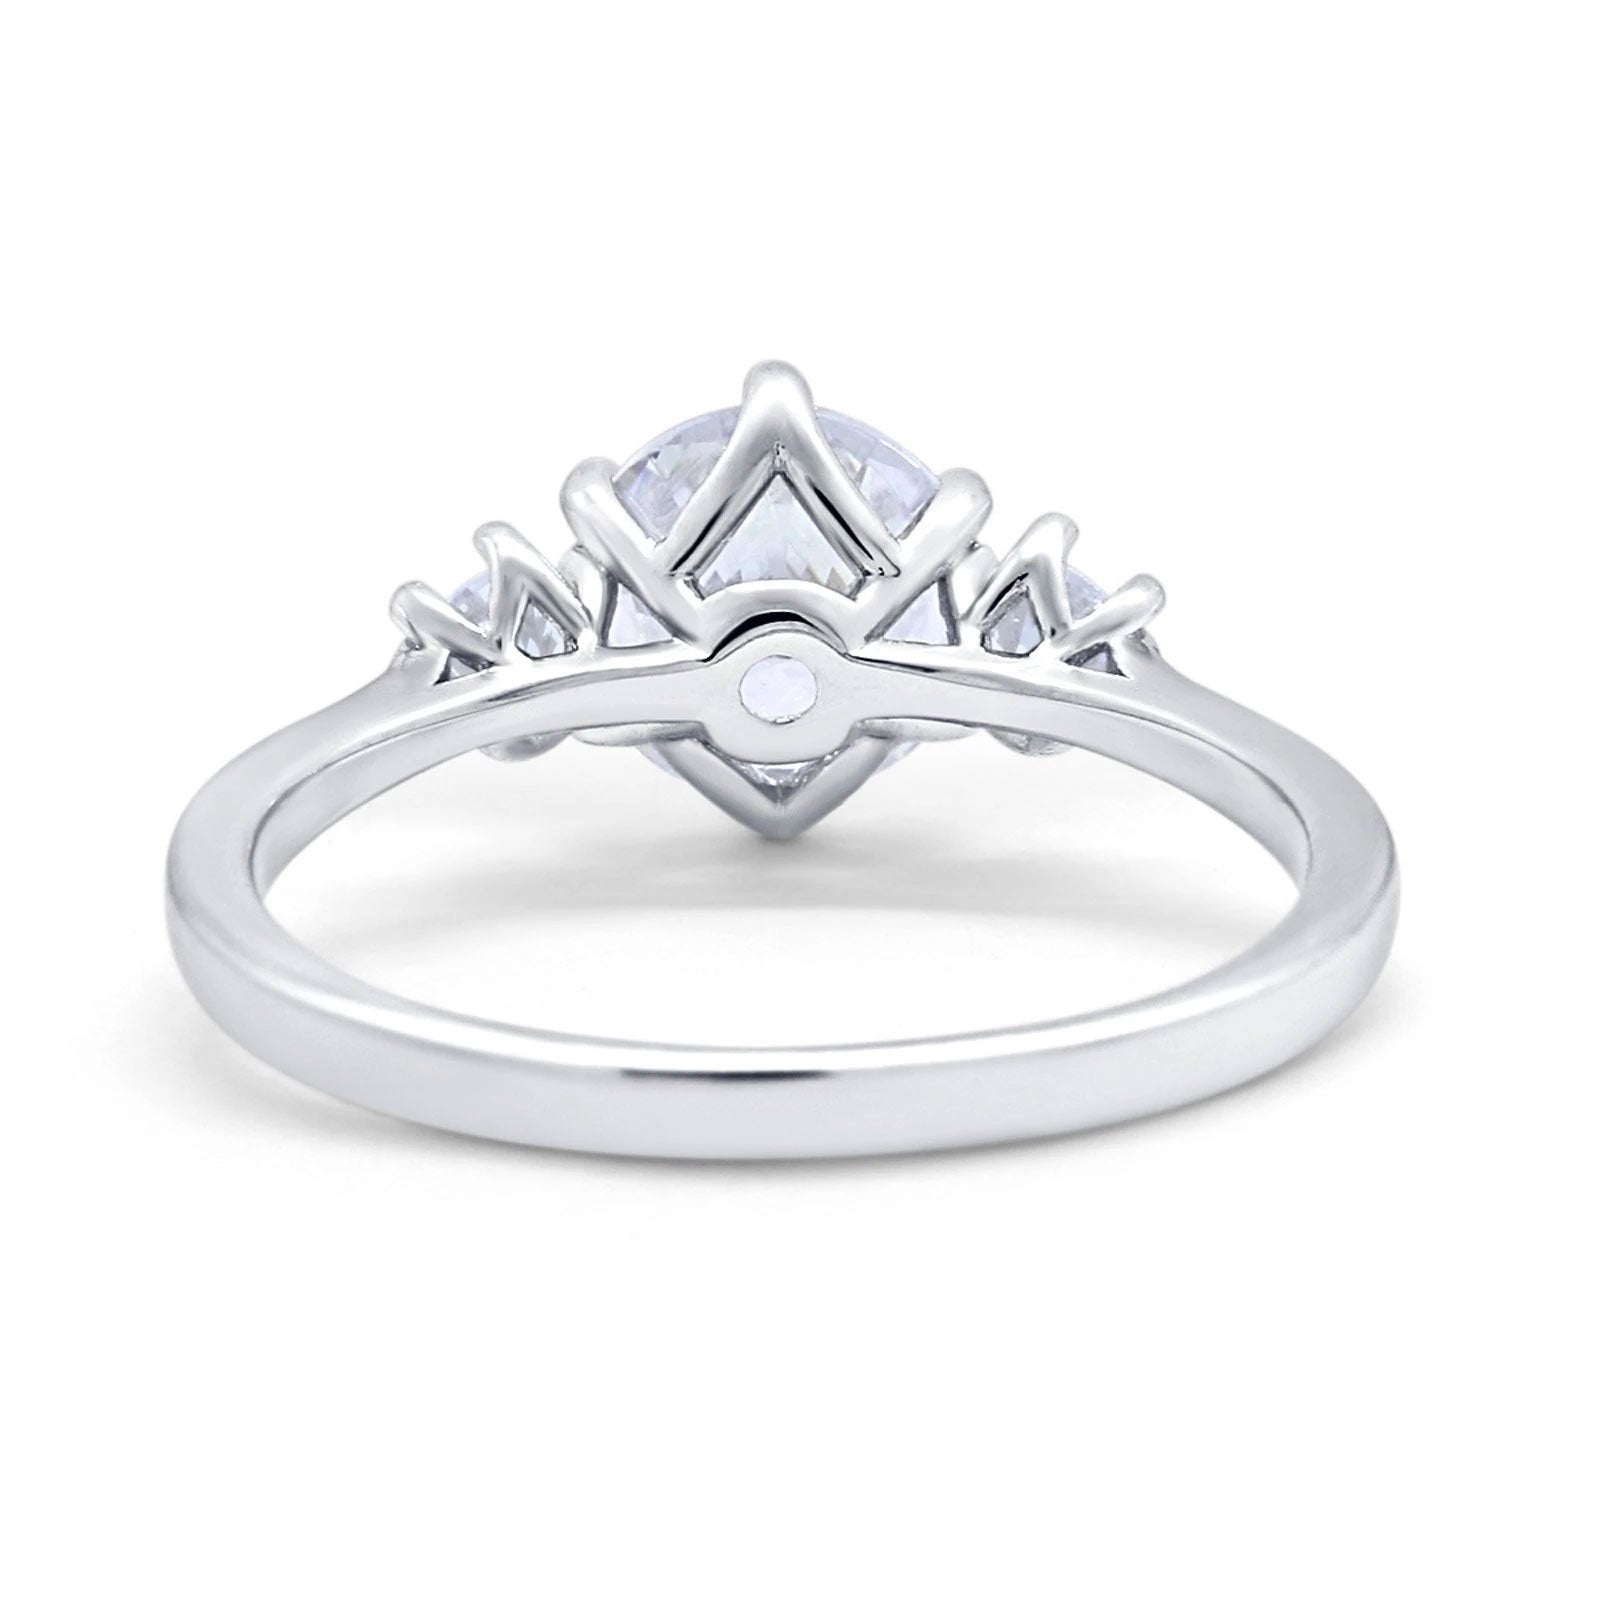 14K Gold Three Stone Wedding Engagement Bridal Ring Round Shape Simulated Cubic Zirconia